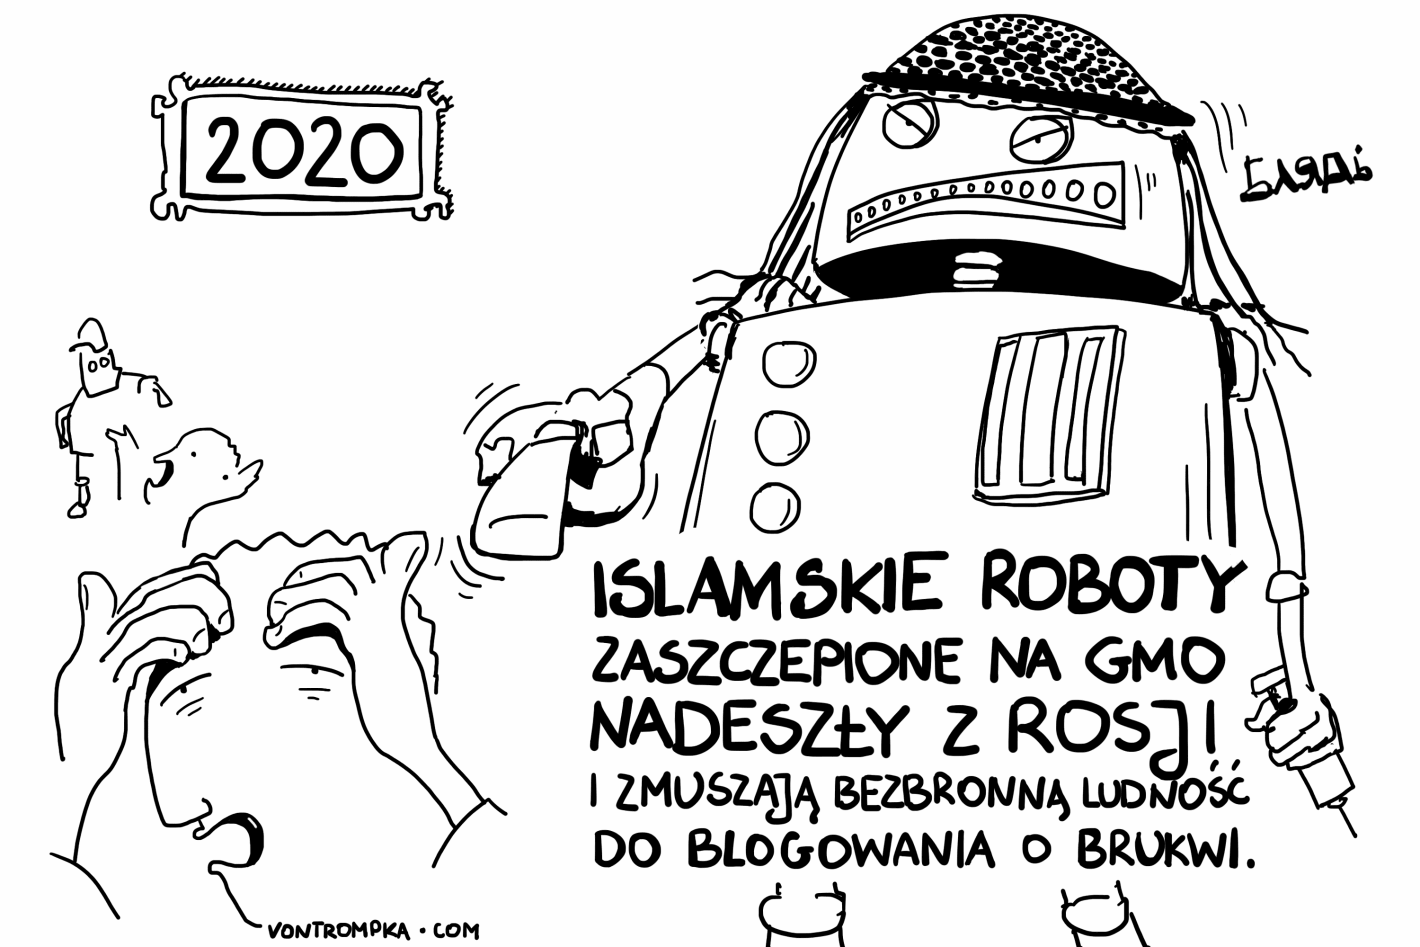 2020. islamskie roboty zaszczepione na GMO nadeszły z Rosji i zmuszają bezbronną ludność do blogowania o brukwi. bladz